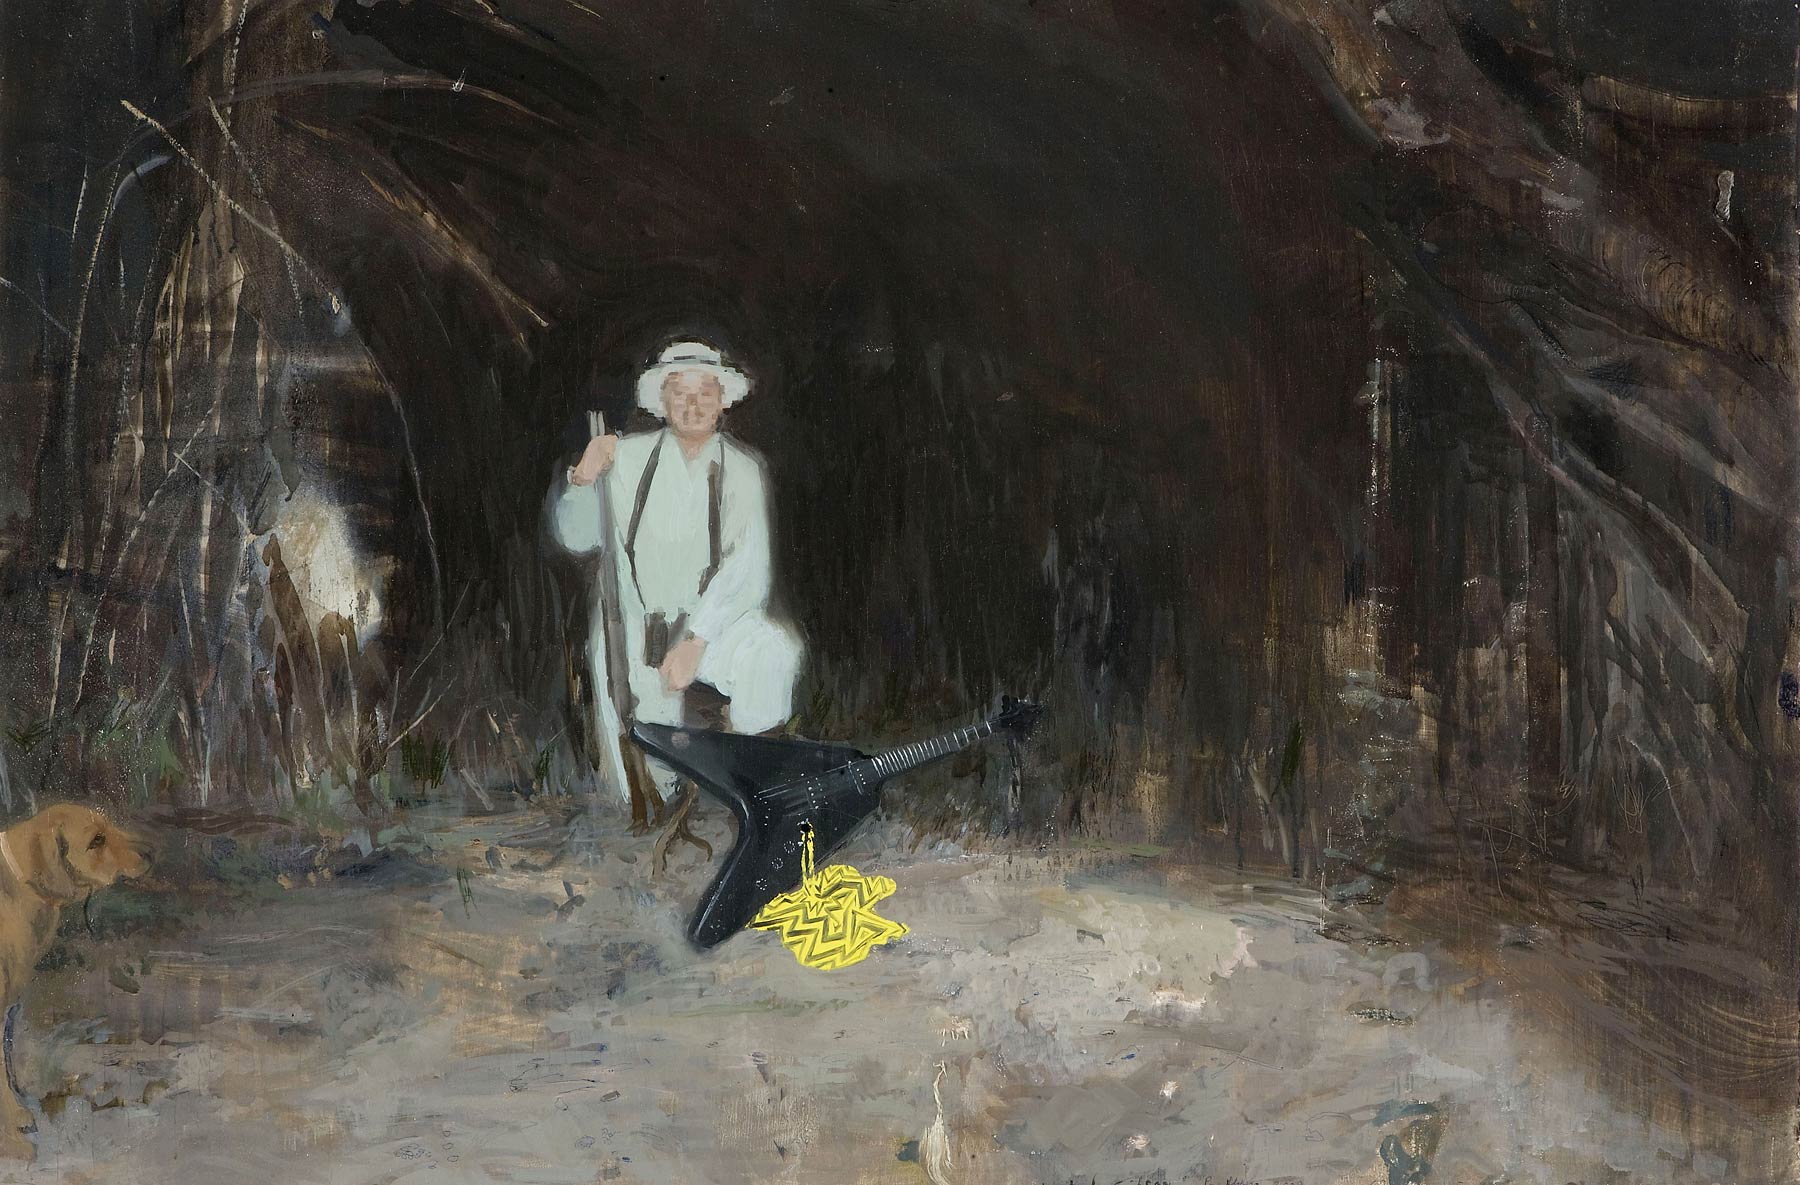 Hunted Gibson, 2008. Пере Льобера (Pere Llobera) - современный испанский, каталонский художник. Современная живопись Испании, Каталонии. Картина